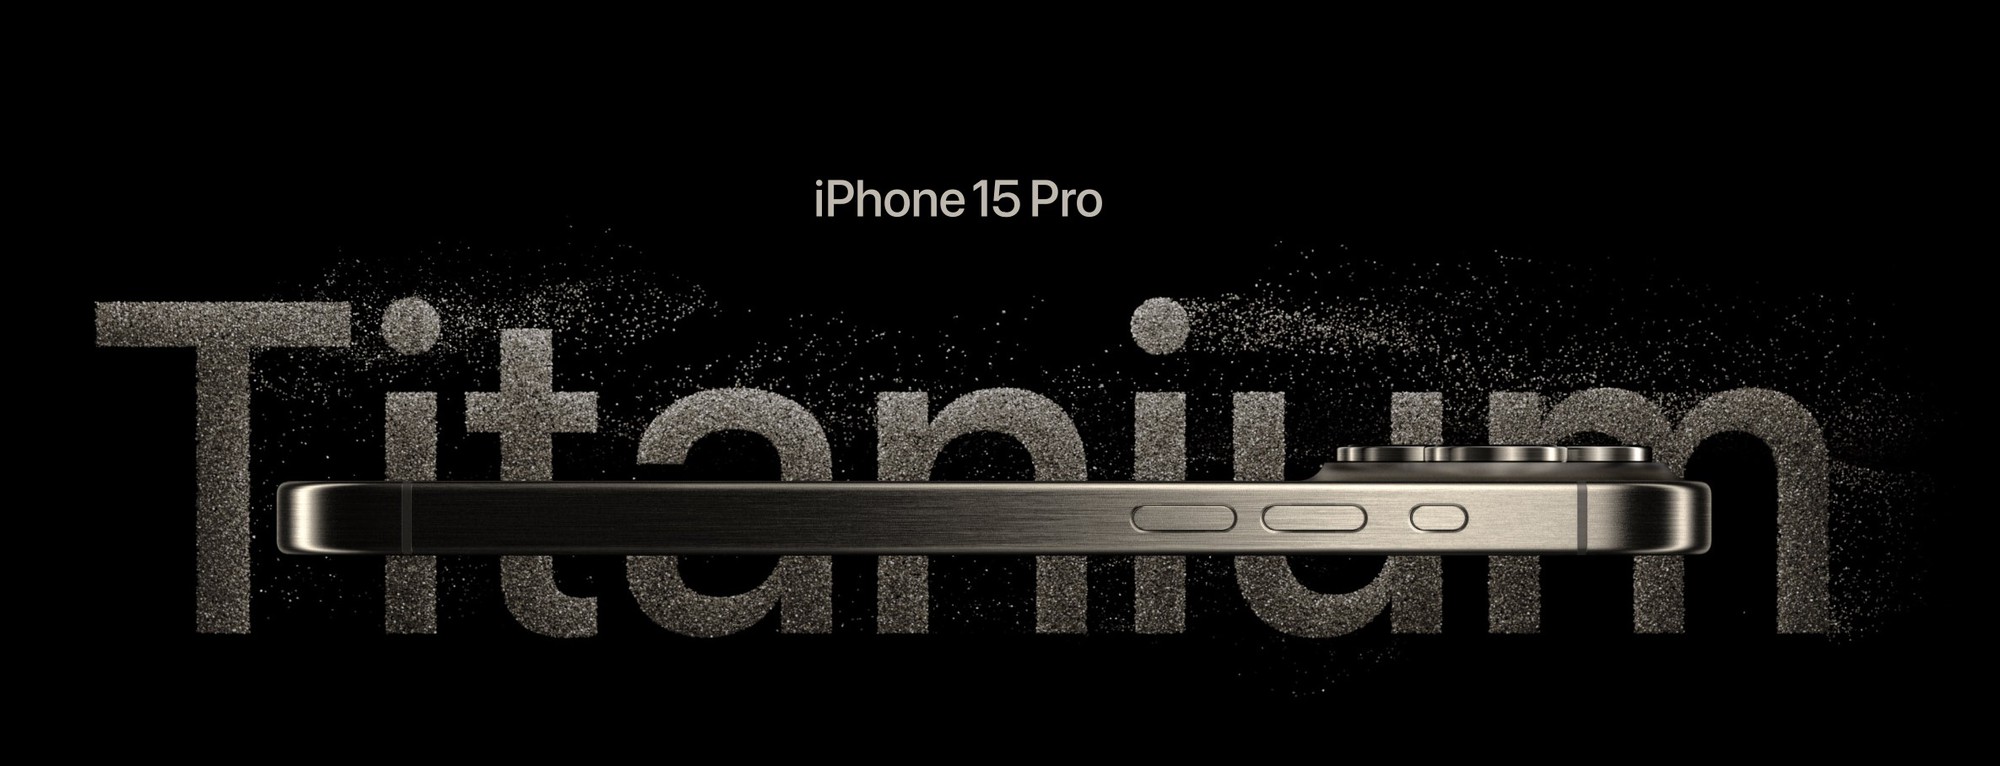 Titan _chào đón_ bạn ngay khi vào trang chủ của iPhone 15 Pro.jpg